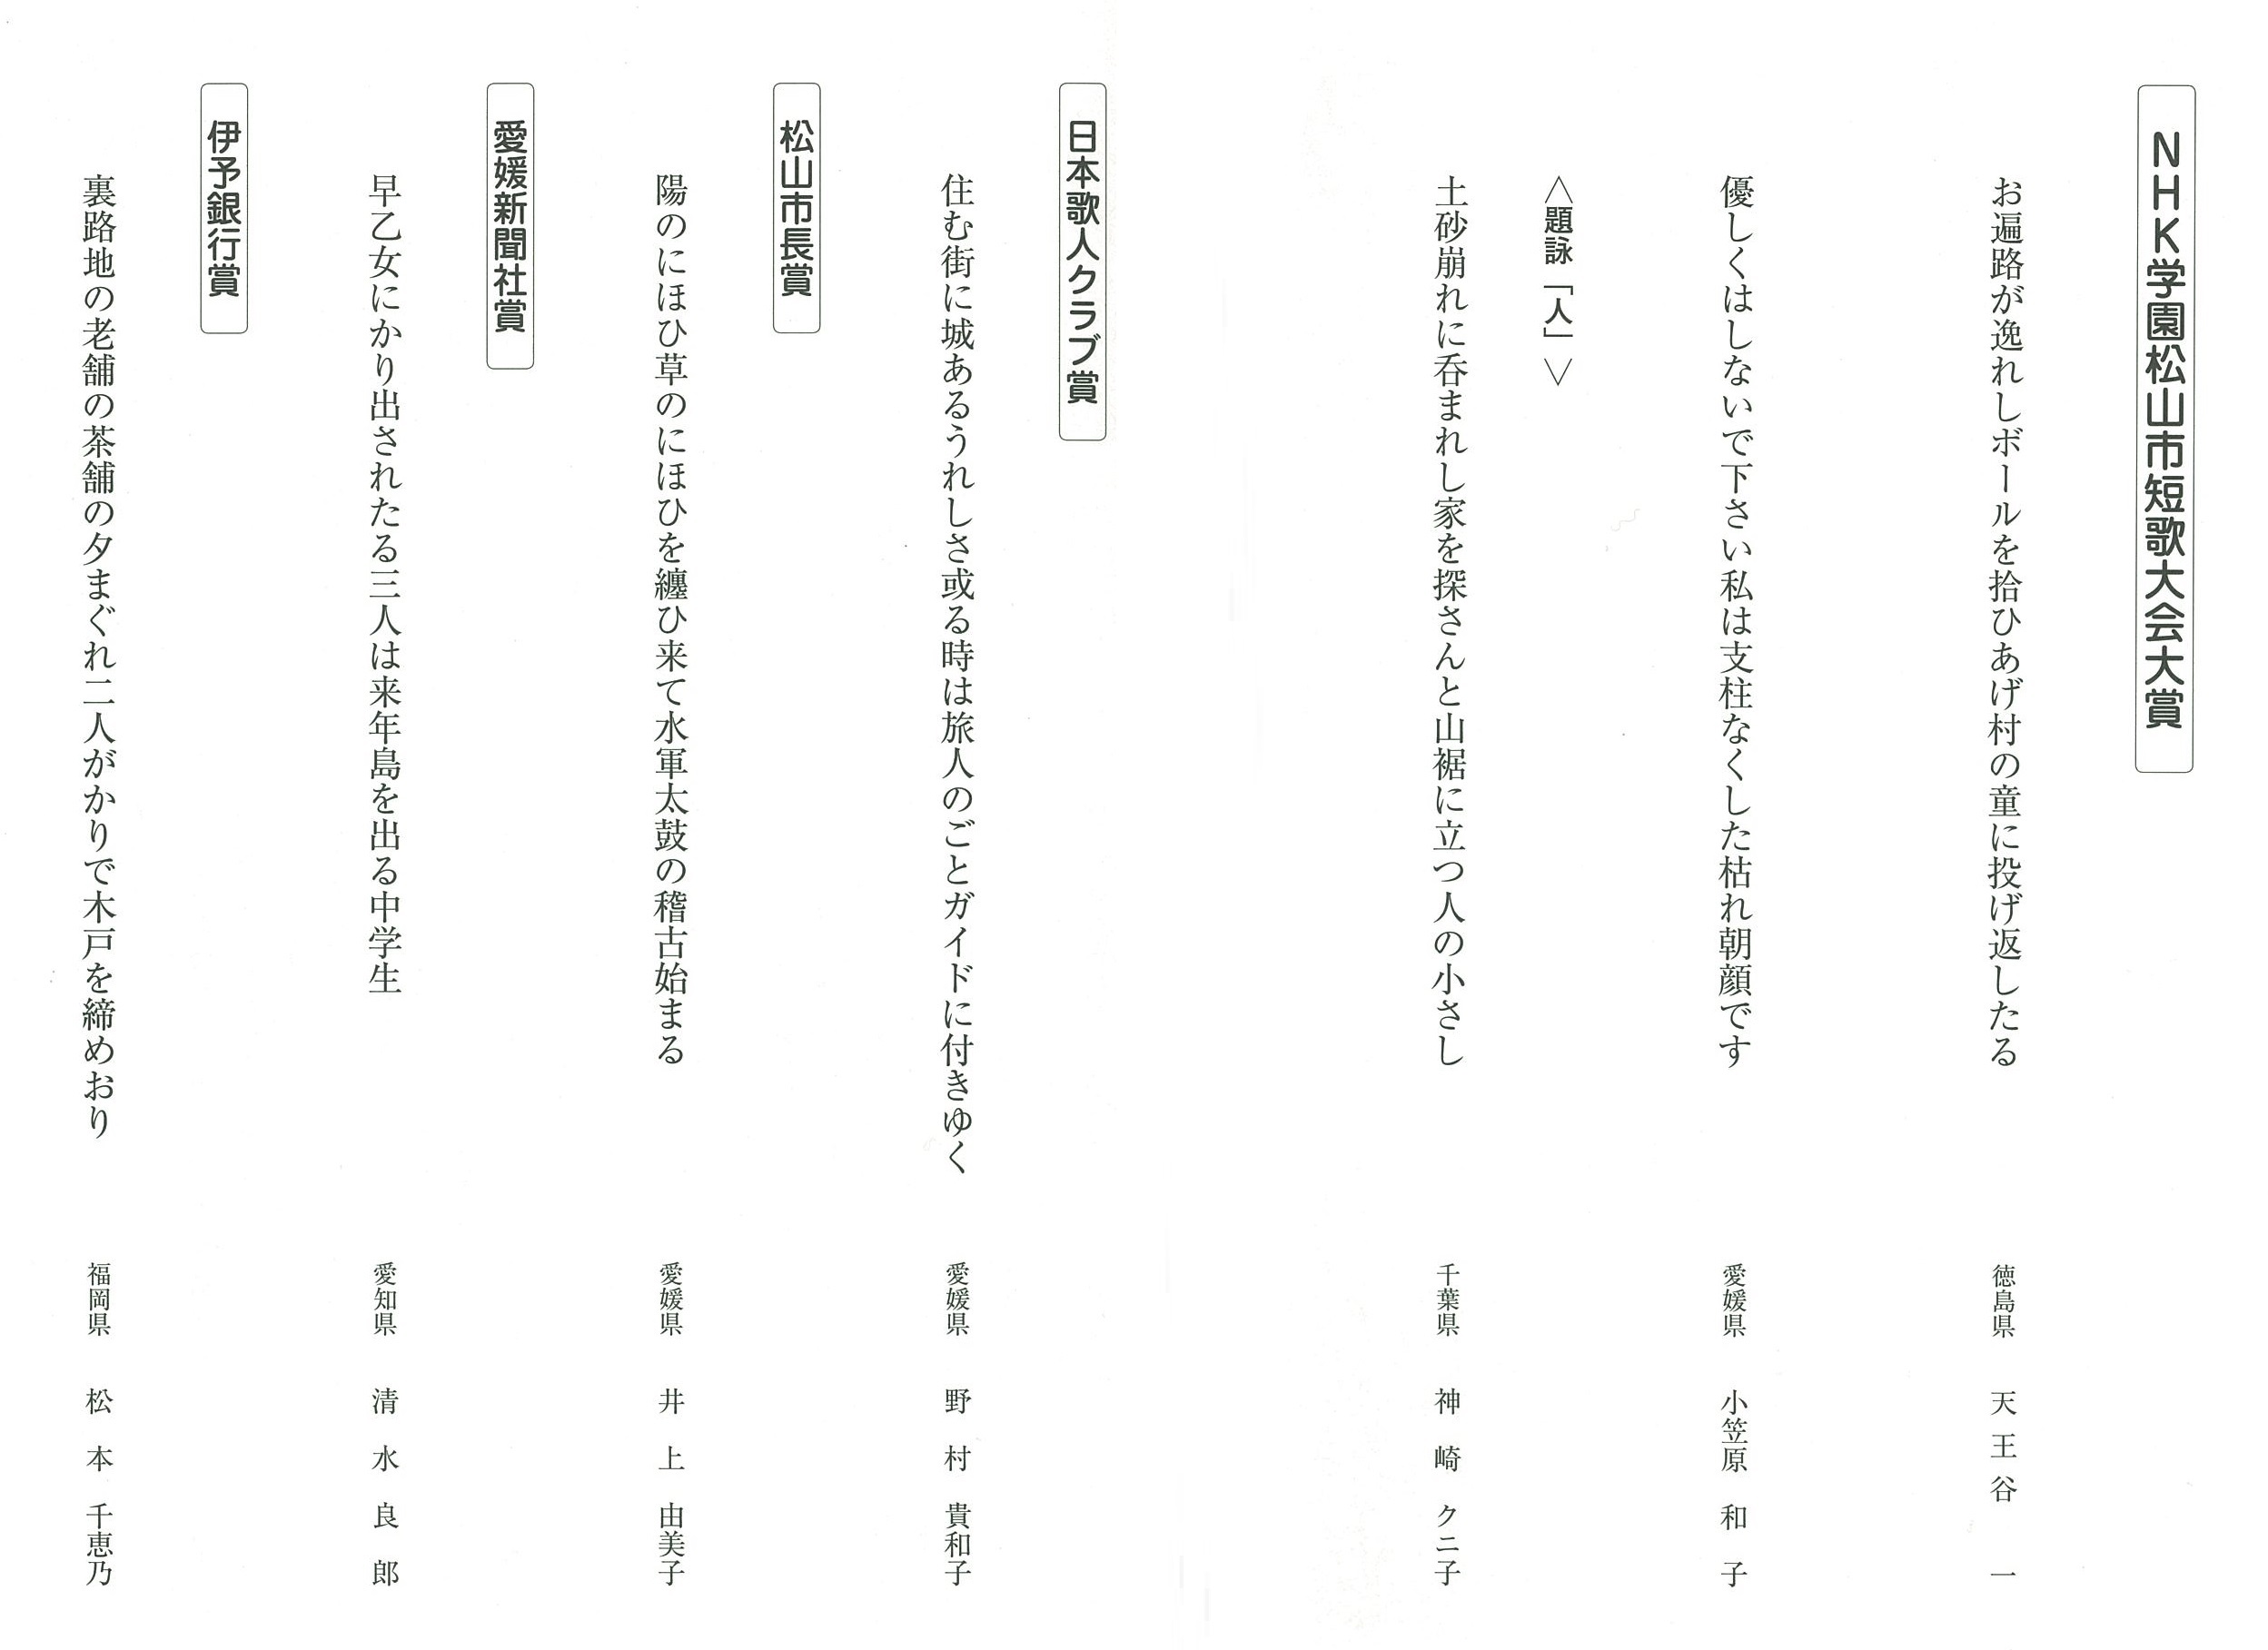 結果報告 松山市短歌 俳句大会 生涯学習通信講座 Nhk学園